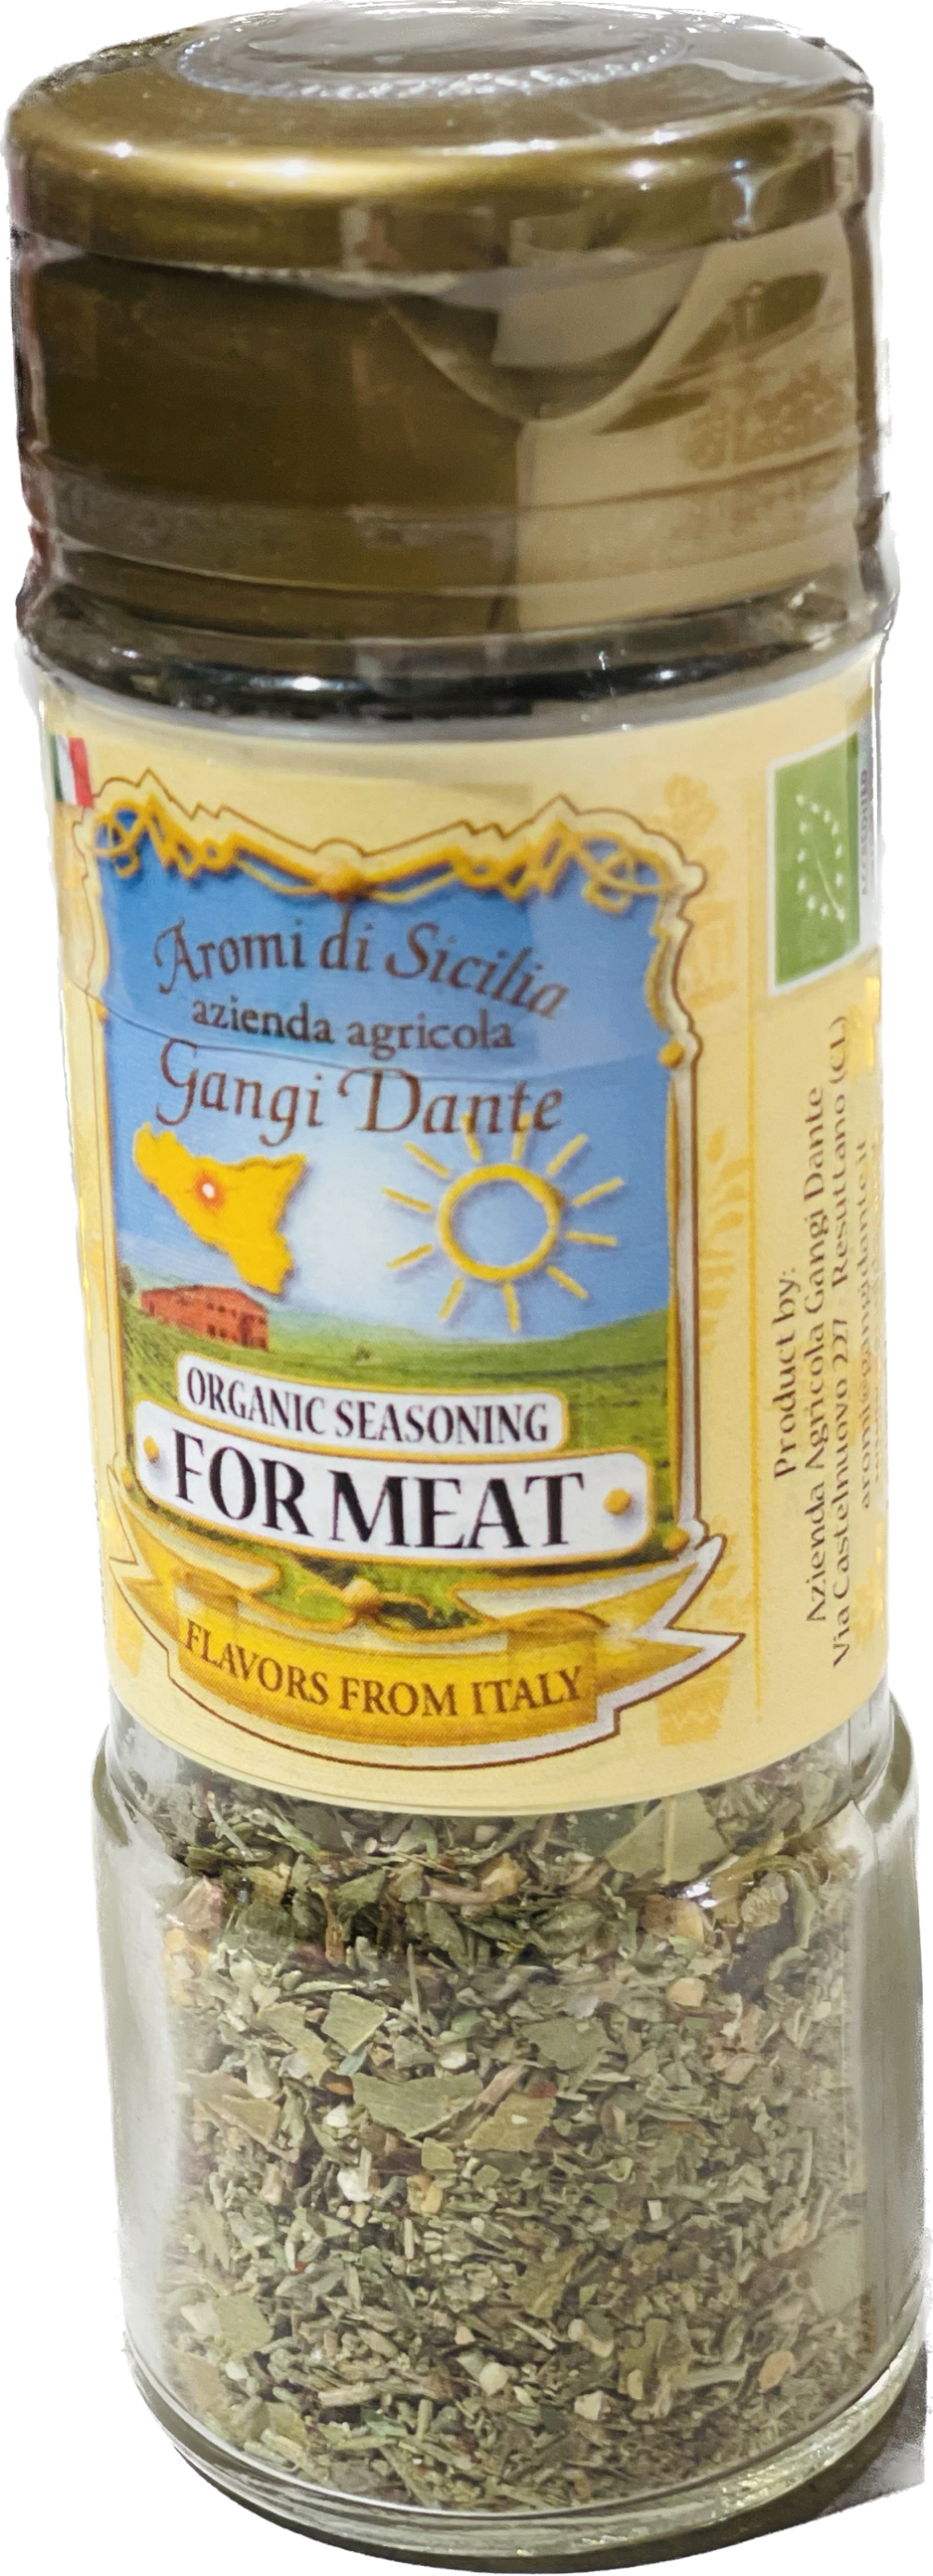 Condimento per carne BIO Dispenser 20g - Aromi di Sicilia til kjøttretter Condimento bio per carne DISPENSER MxC20 